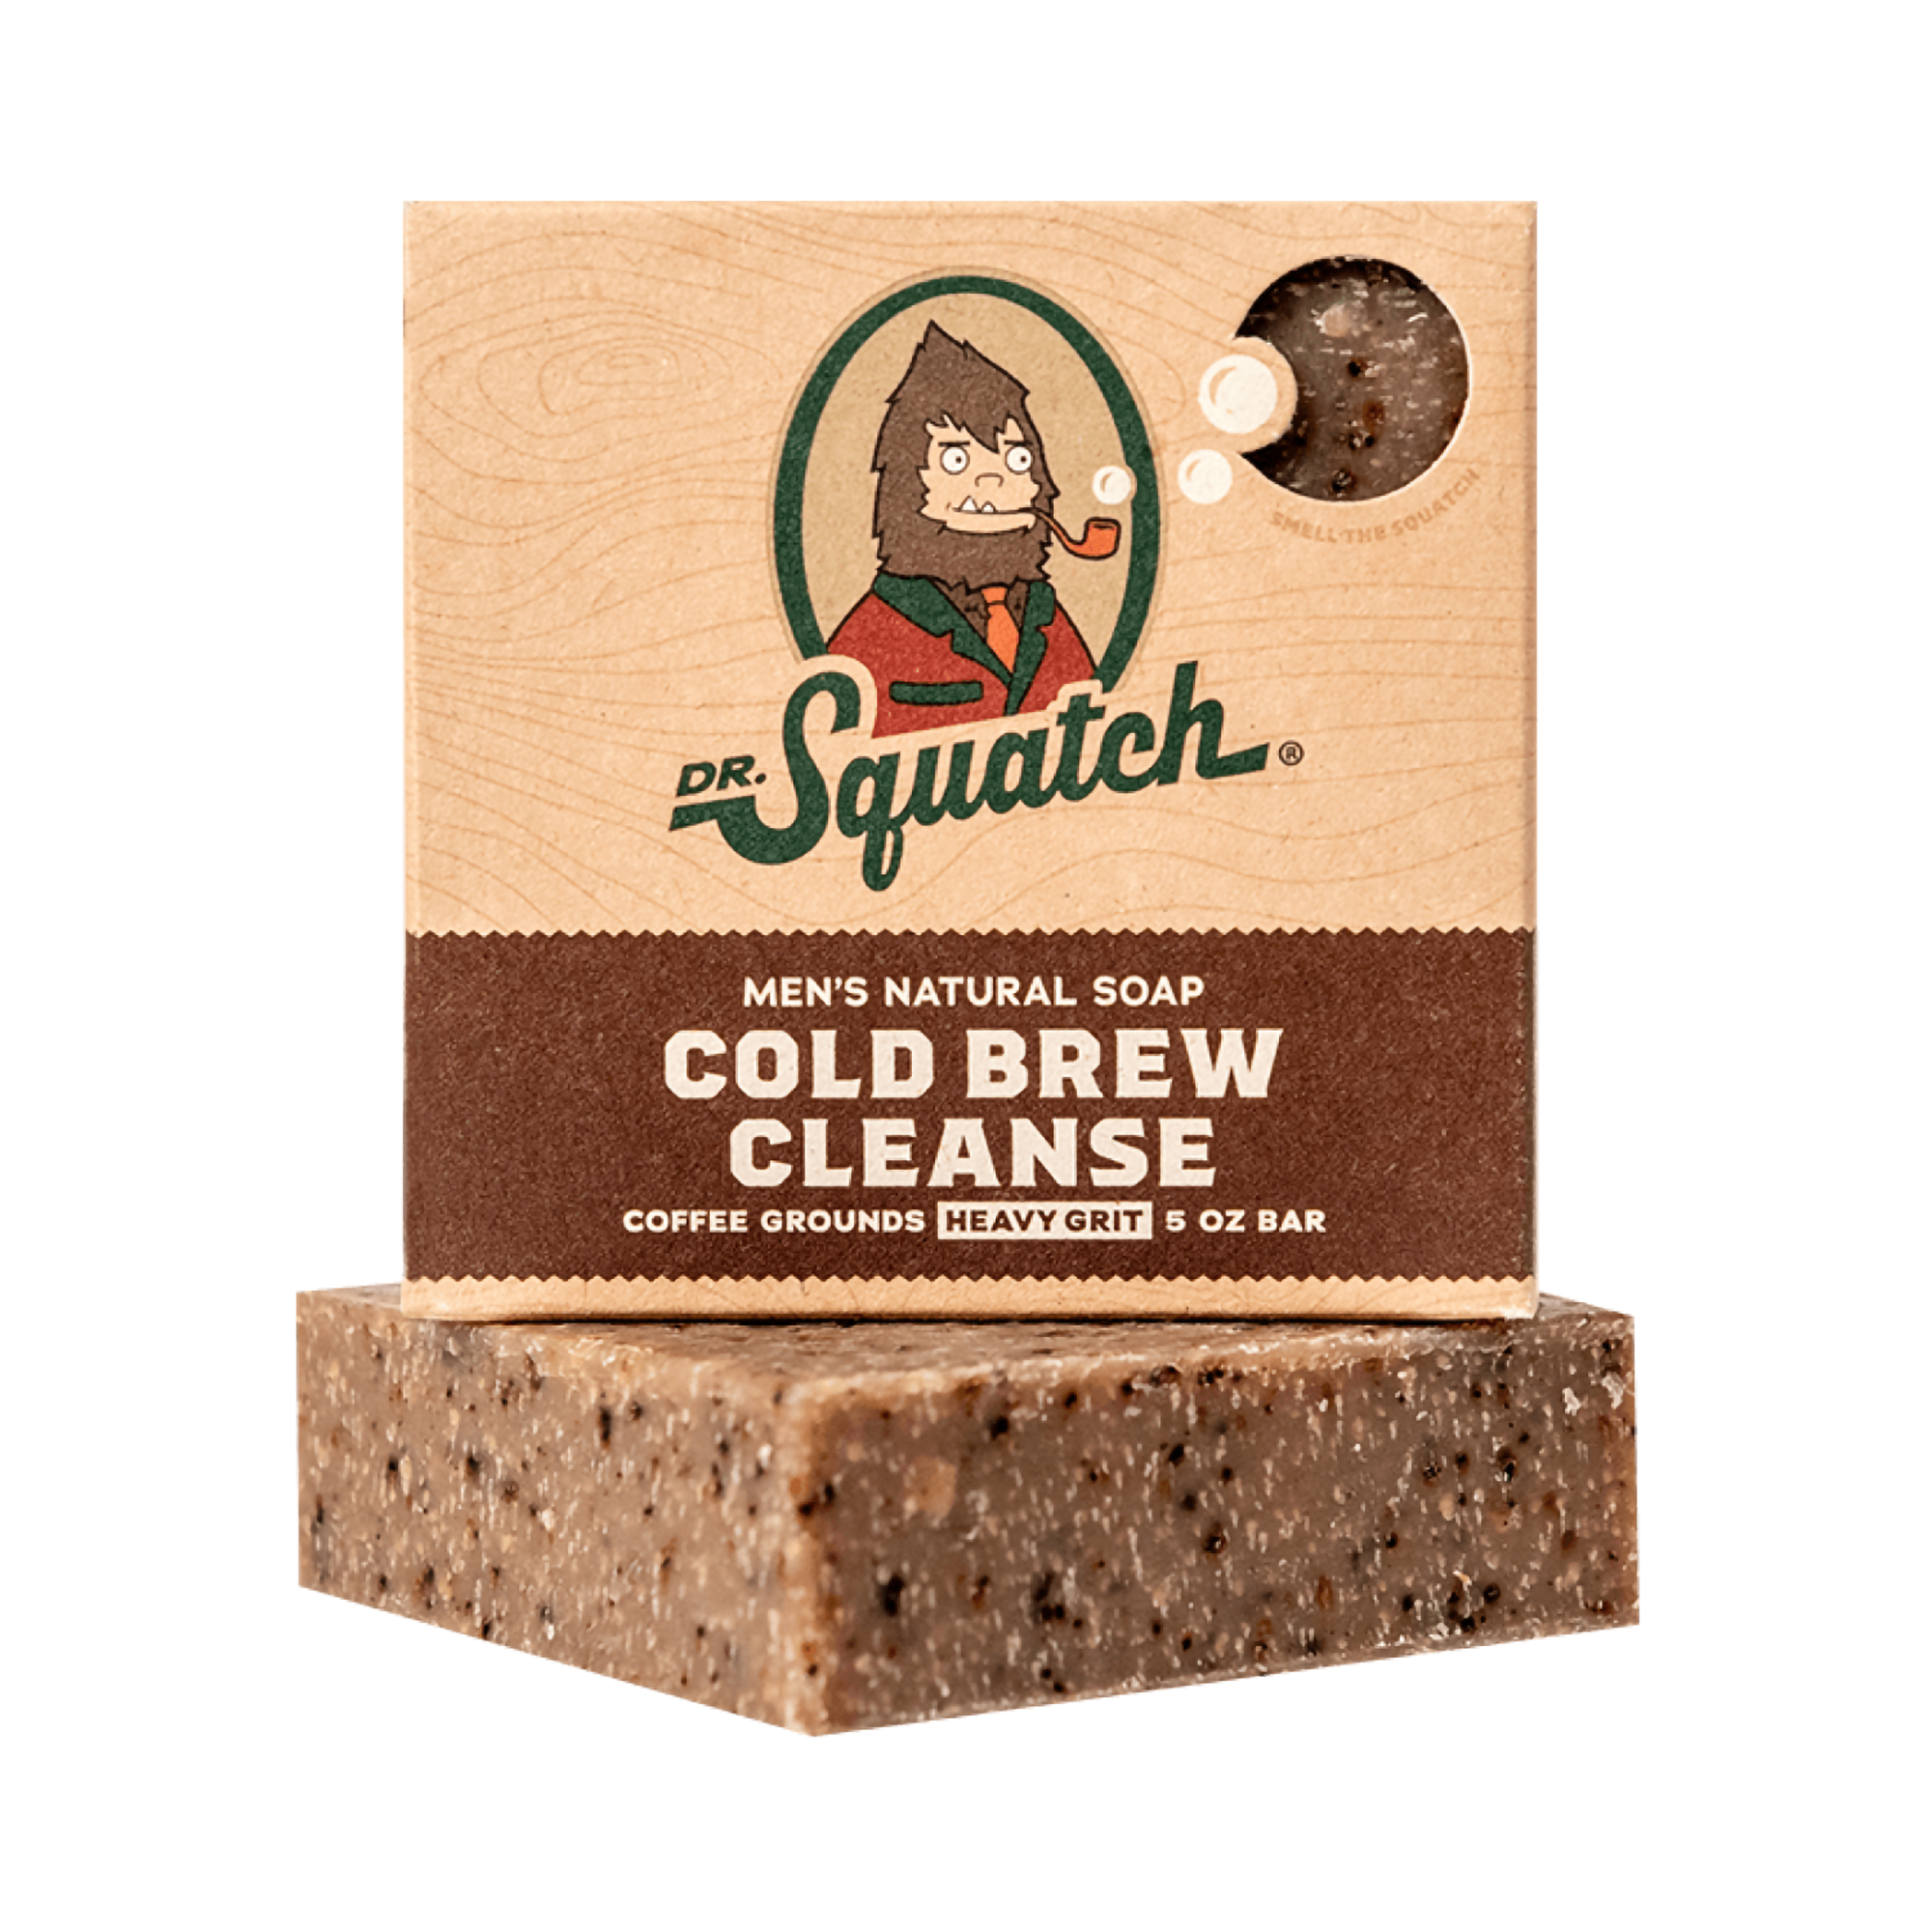 Dr. Squatch Cold Brew Cleanse Bar Soap / 5OZ